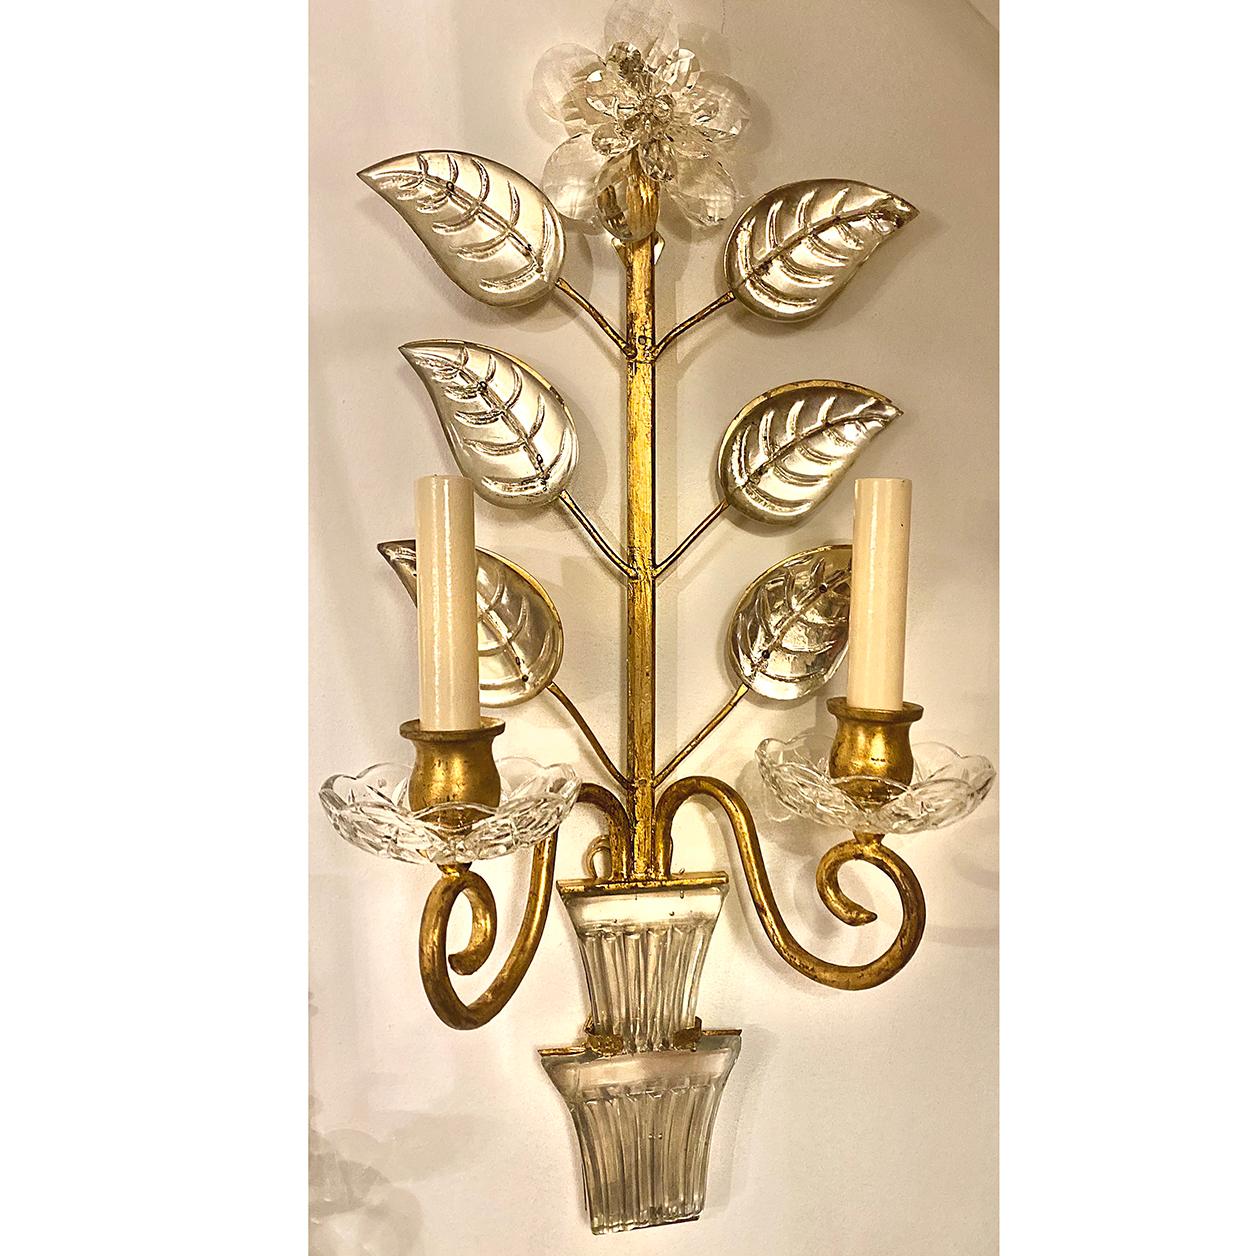 Paire d'appliques françaises des années 1960 à deux bras de lumière dorée avec feuilles en verre moulé et miroir et fleurs en cristal.

Mesures :
Hauteur : 22.25